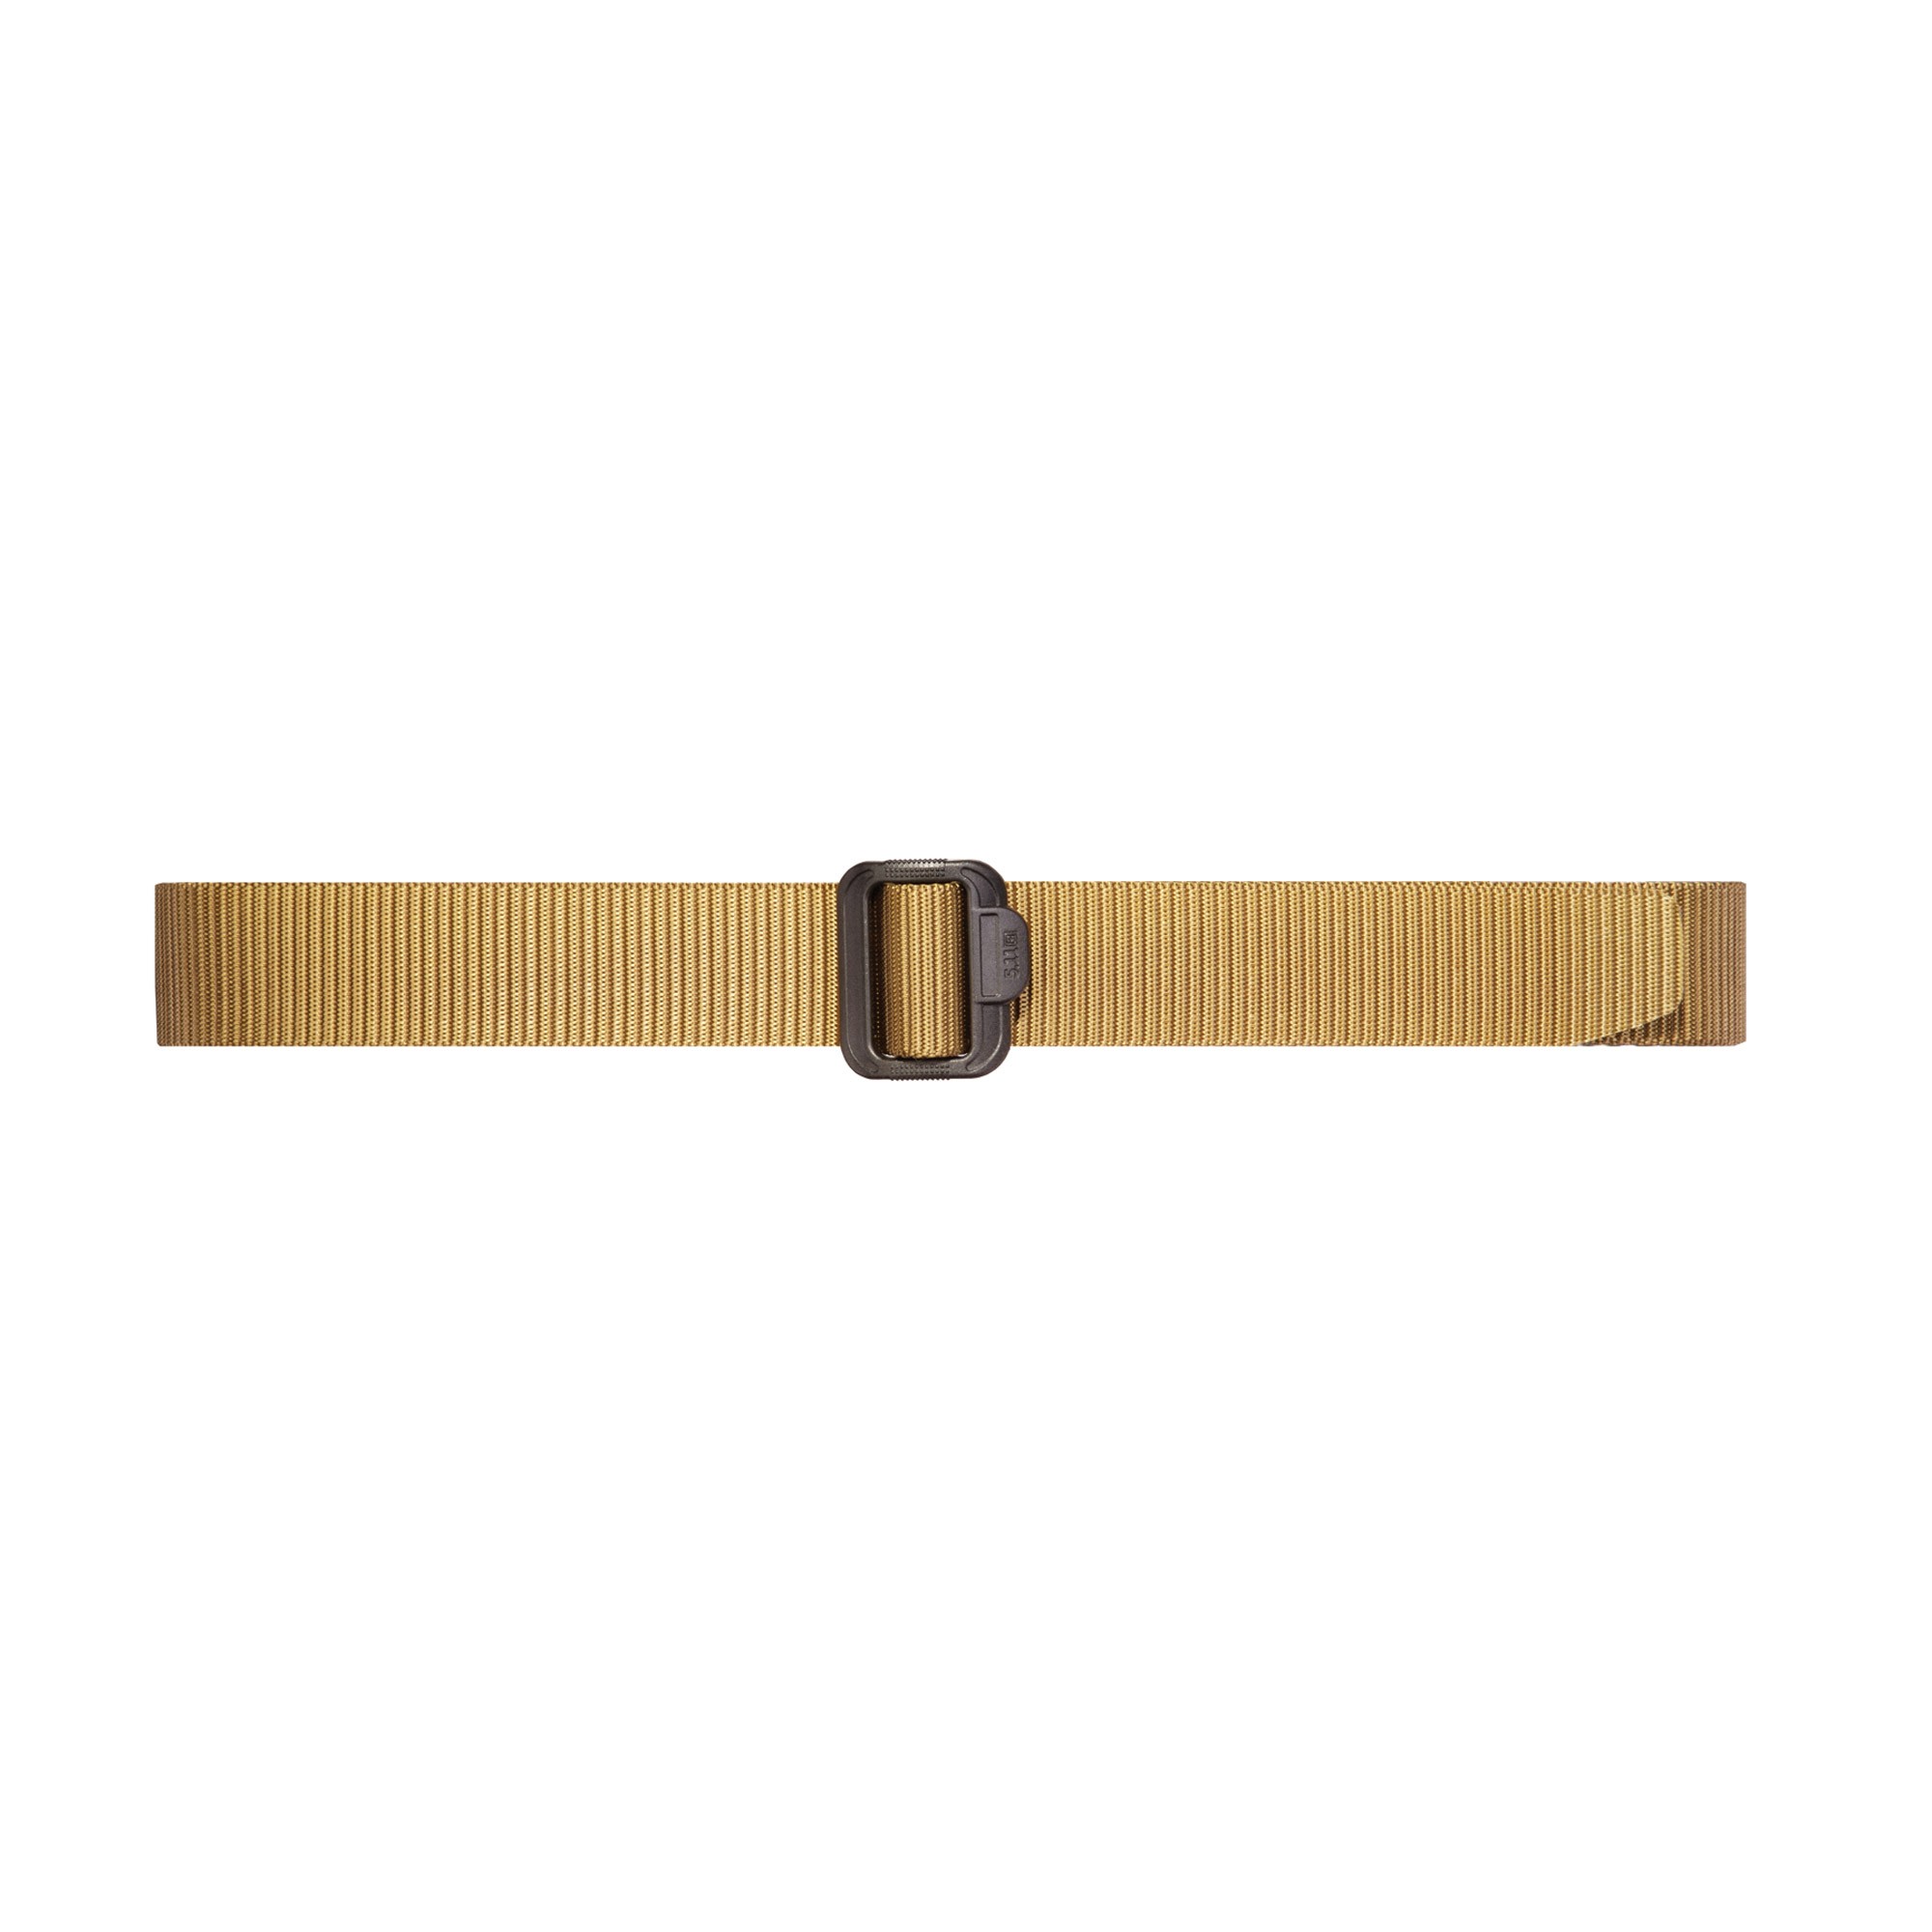 5.11 TDU Belt – 1.75″ Wide